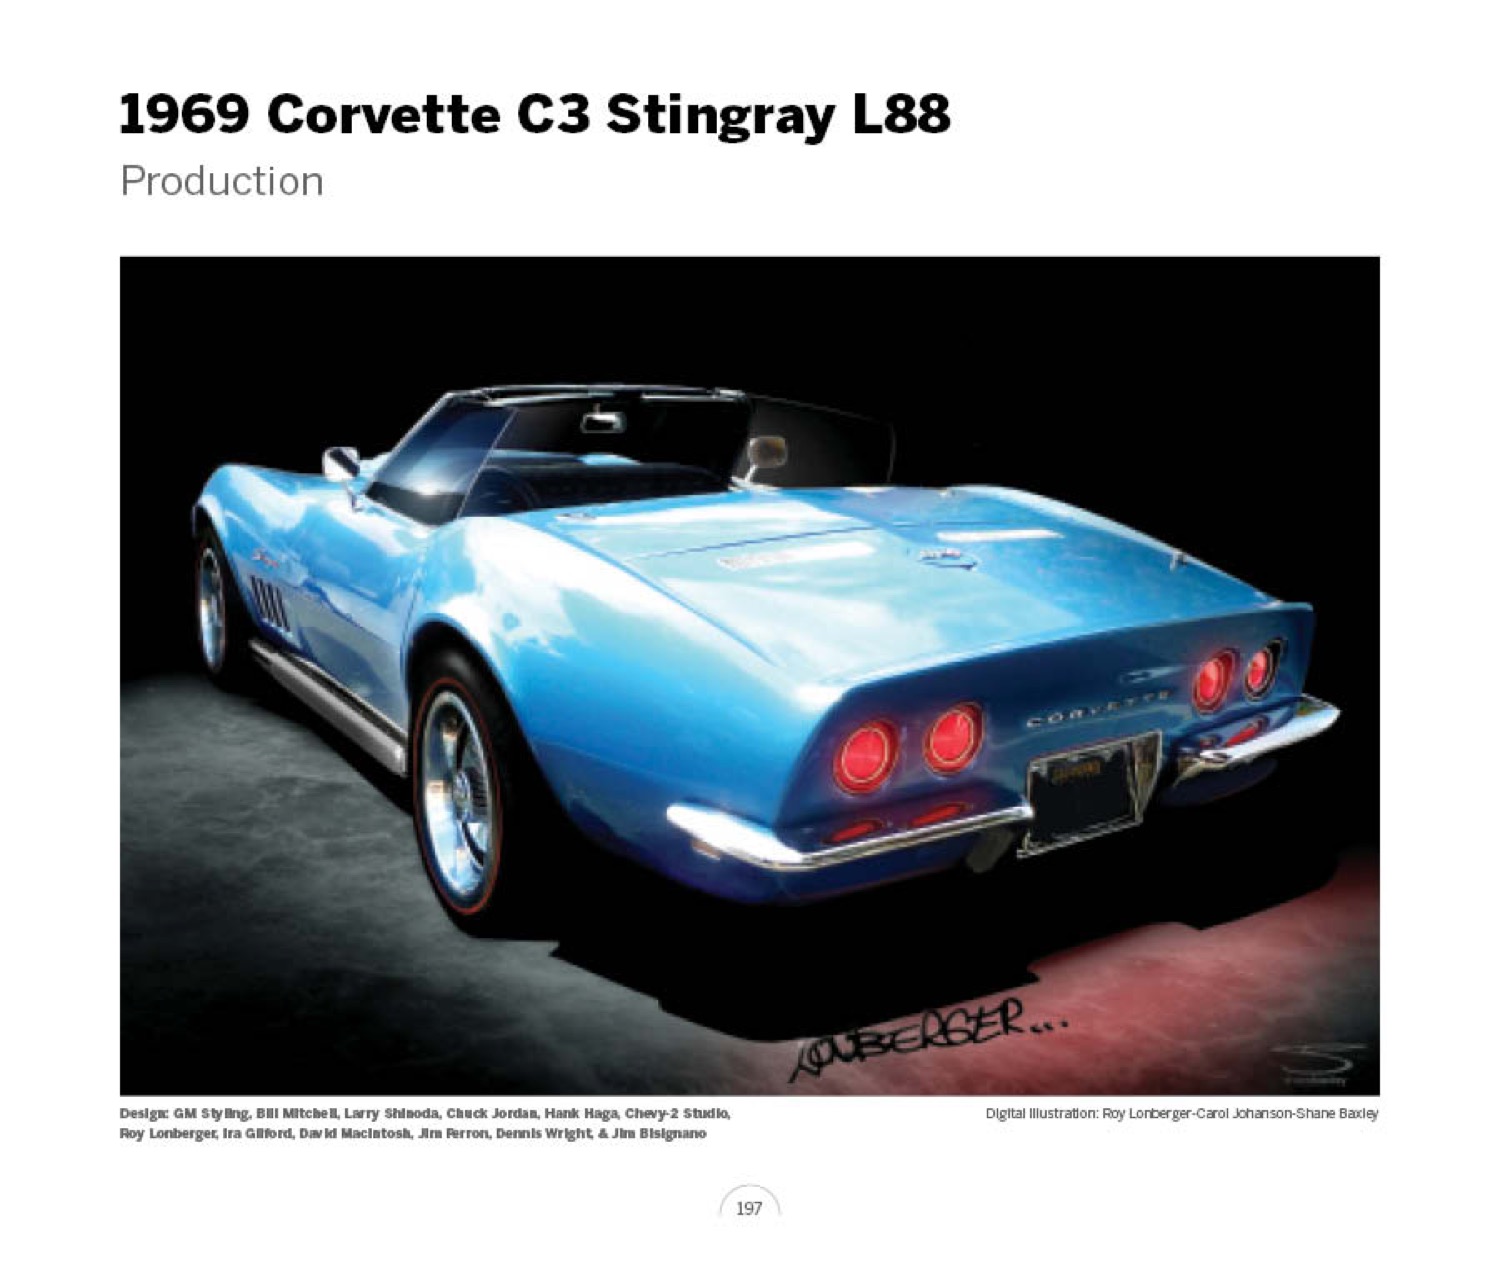 (27) 1969 Corvette C3 Stingray xp807 LoRez.jpg